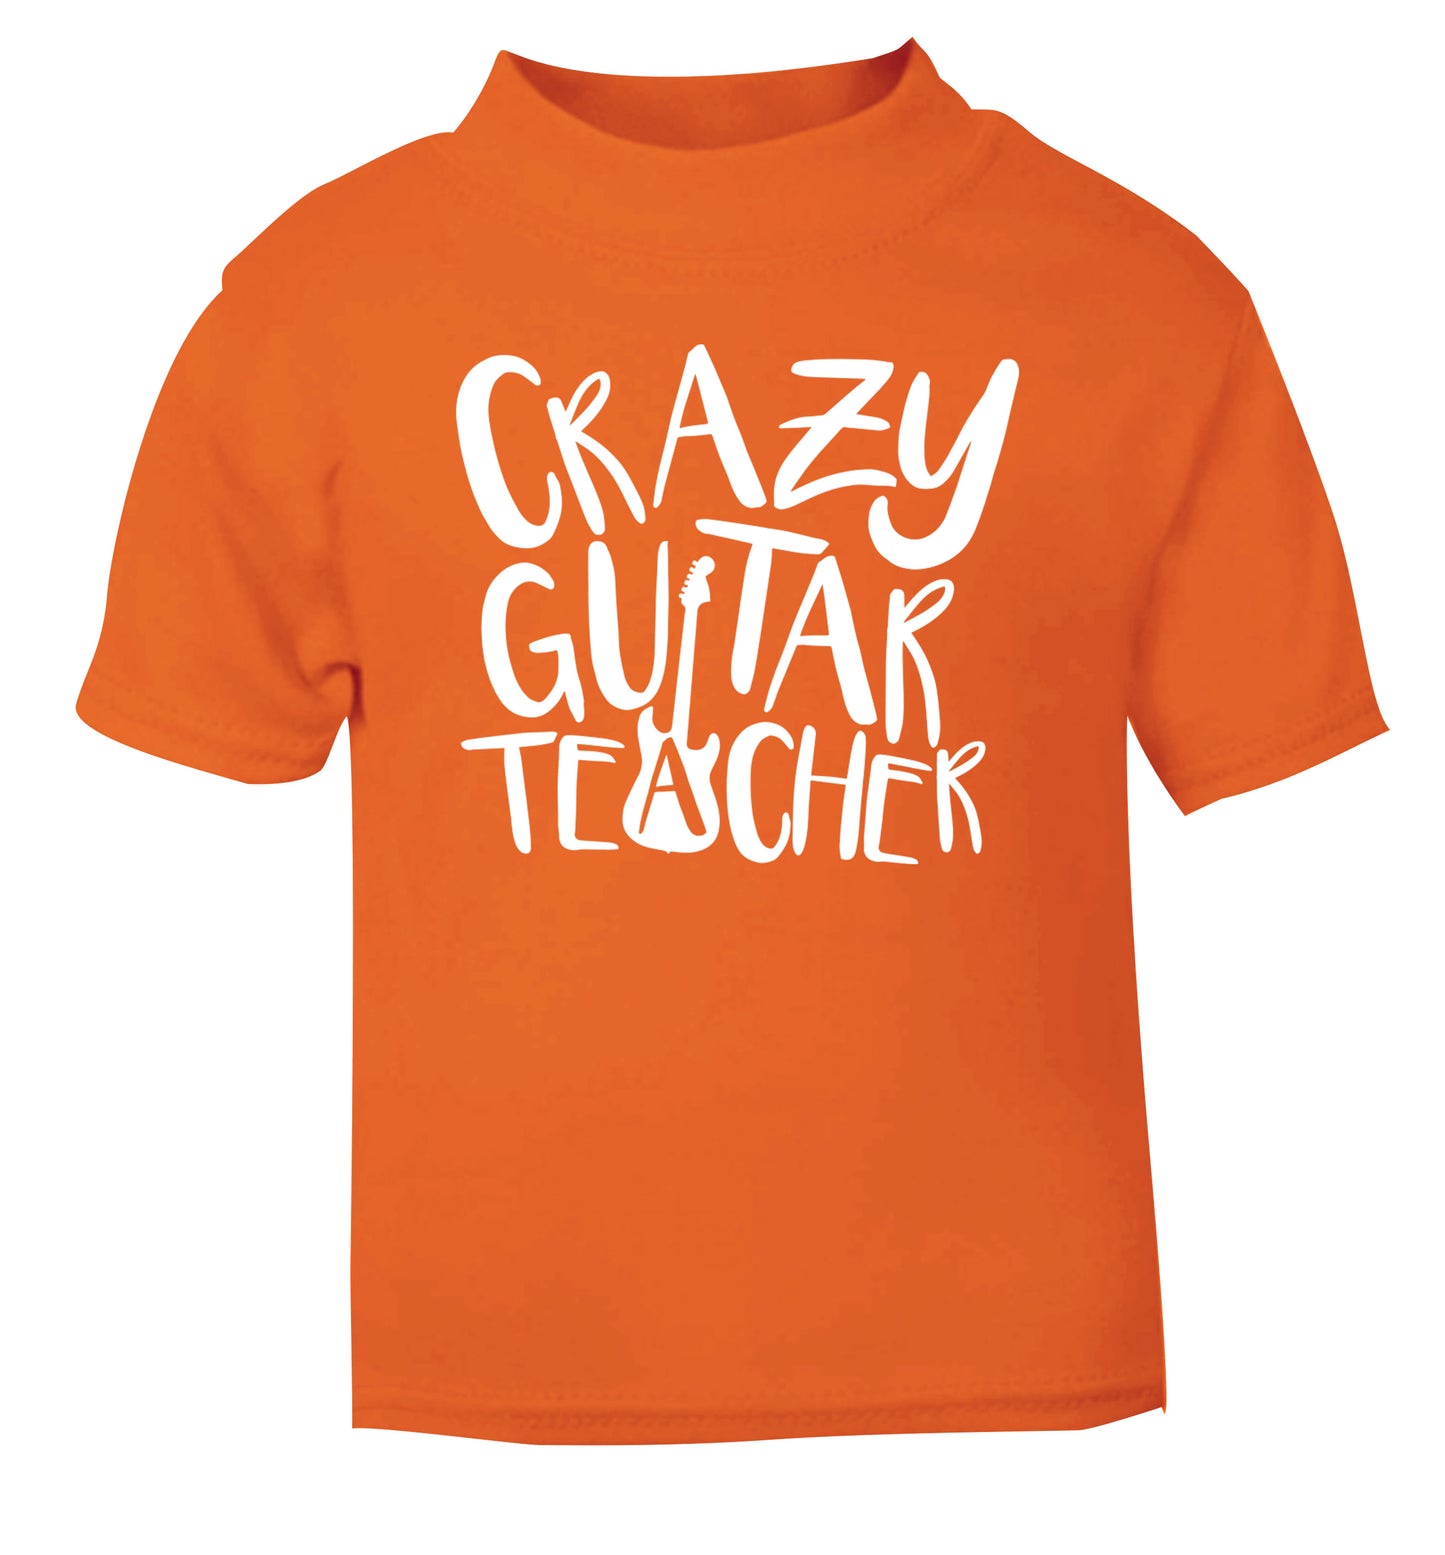 Crazy guitar teacher orange Baby Toddler Tshirt 2 Years